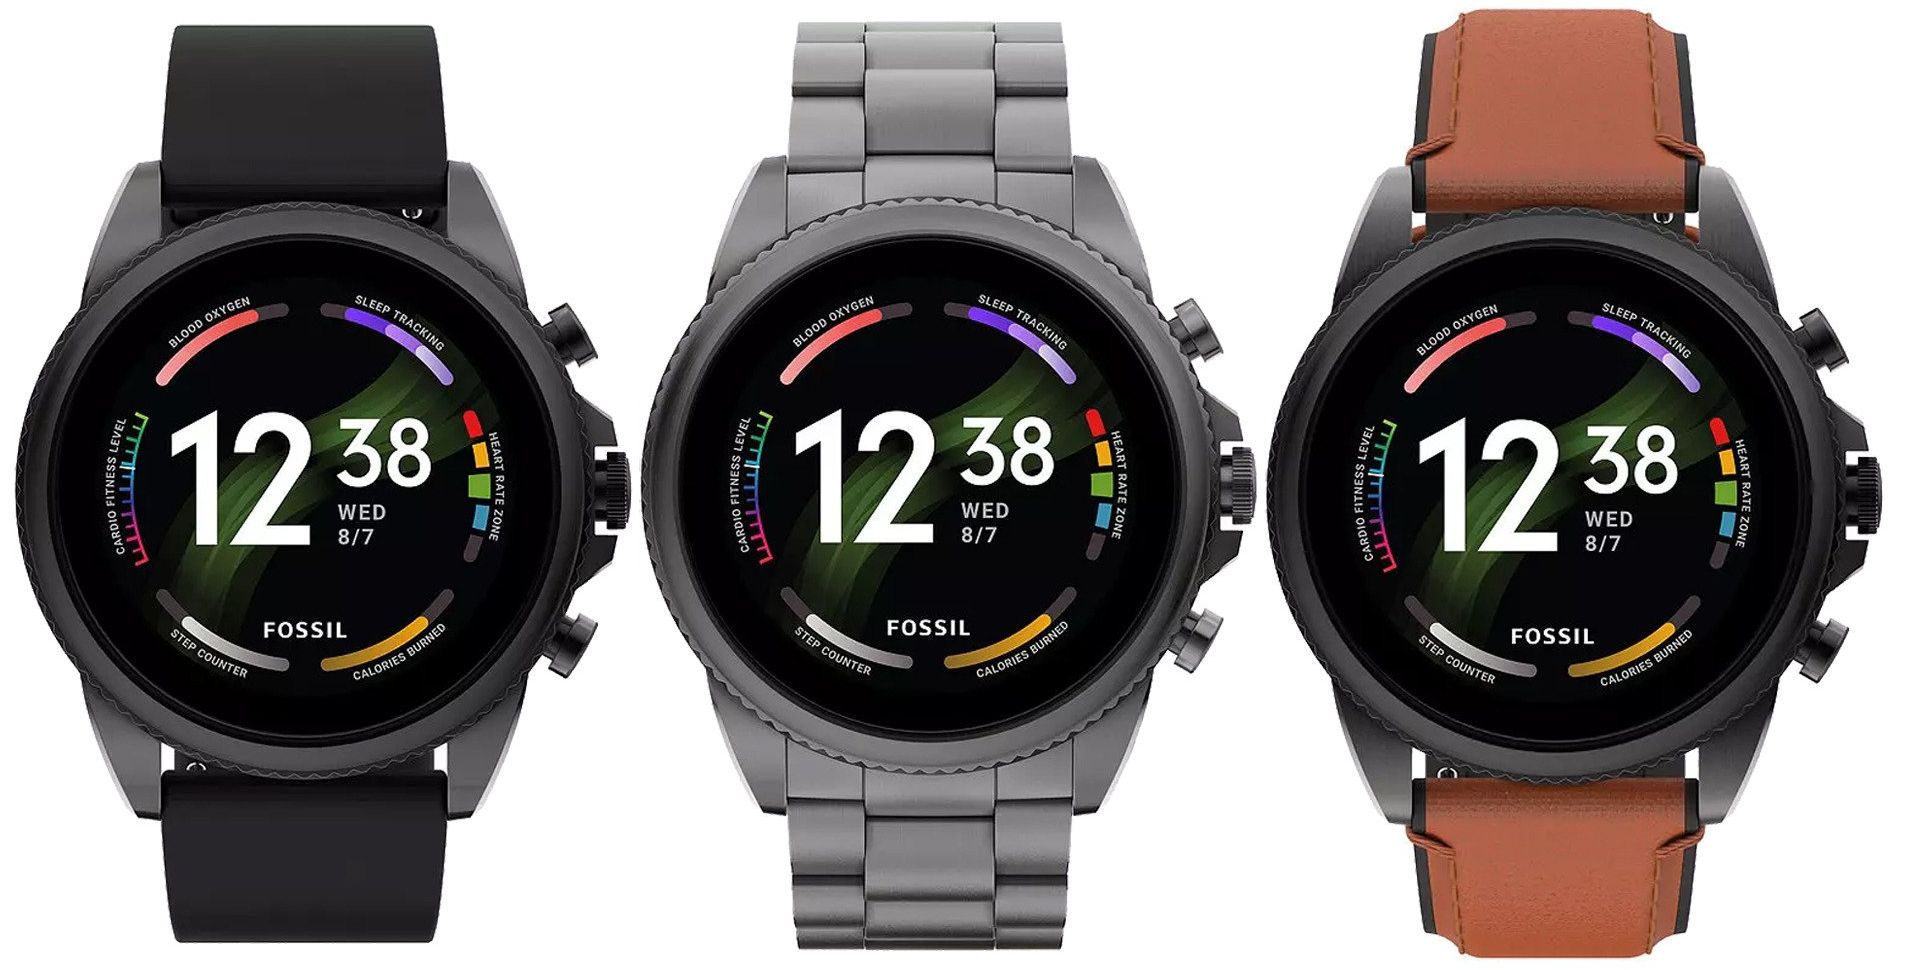 Fossil Gen 6 på Amazon: smartwatch med Snapdragon Wear 4100+ chip, SpO2-sensor, NFC och Wear OS till ett rabatterat pris på 136 USD